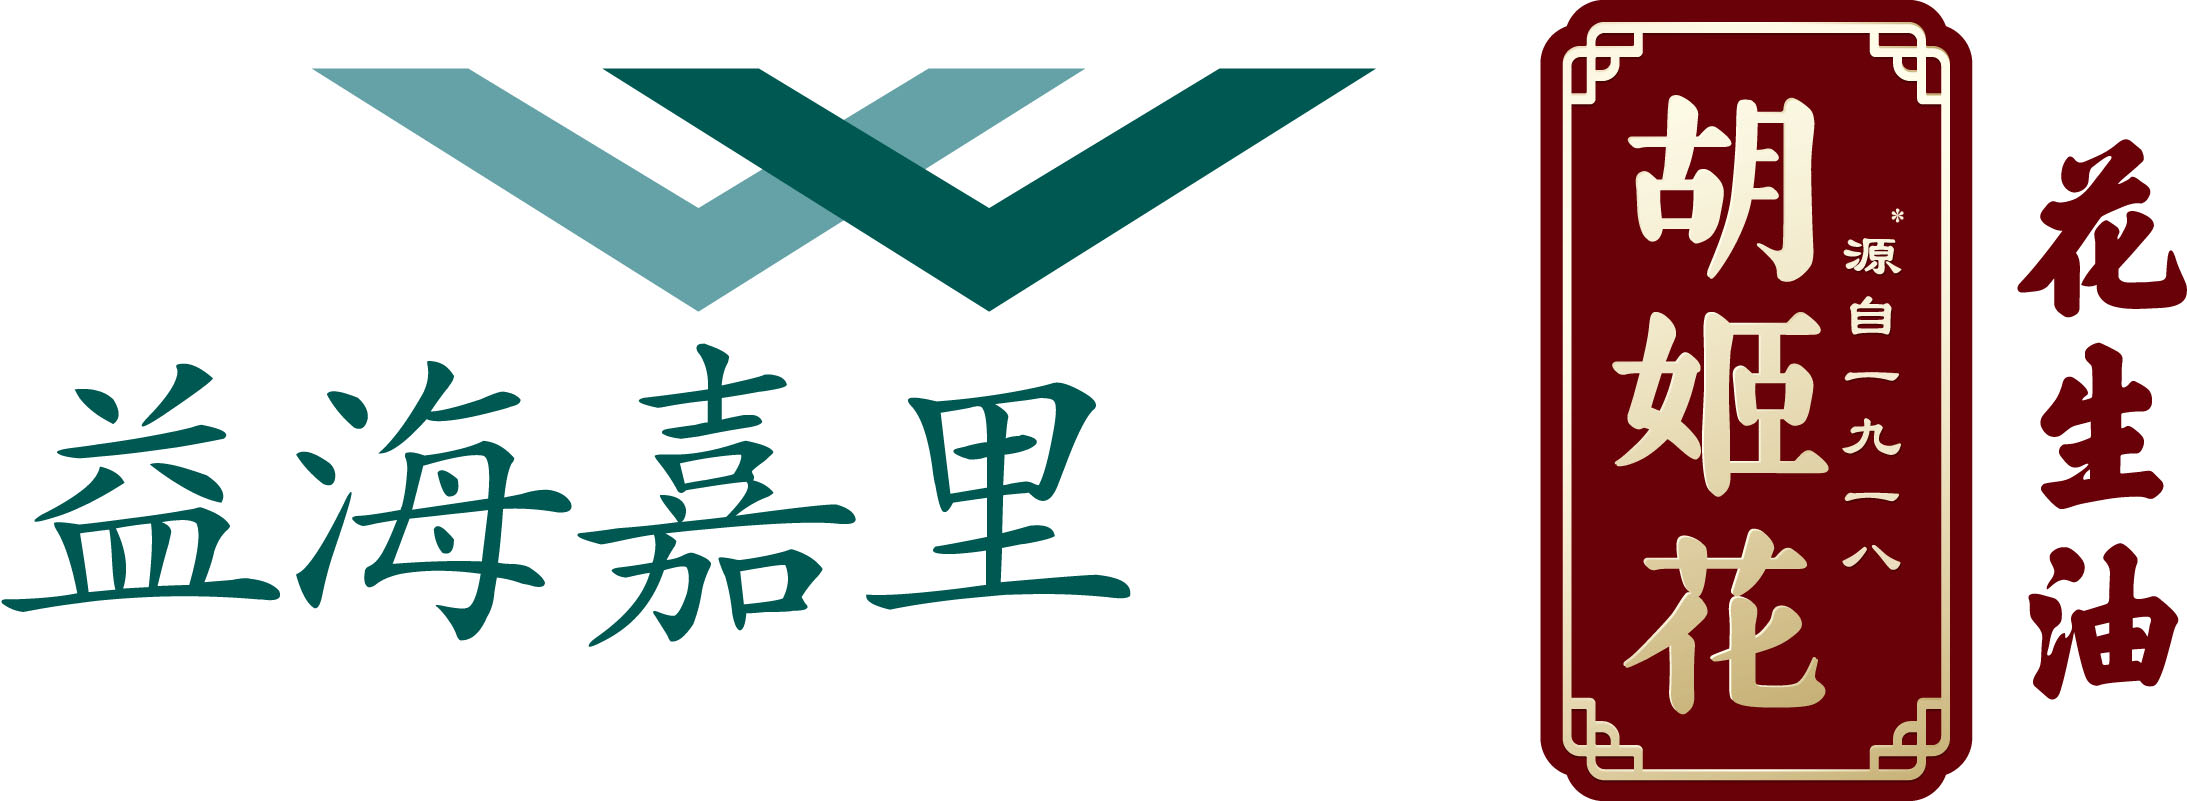 溣  logo(1).jpg